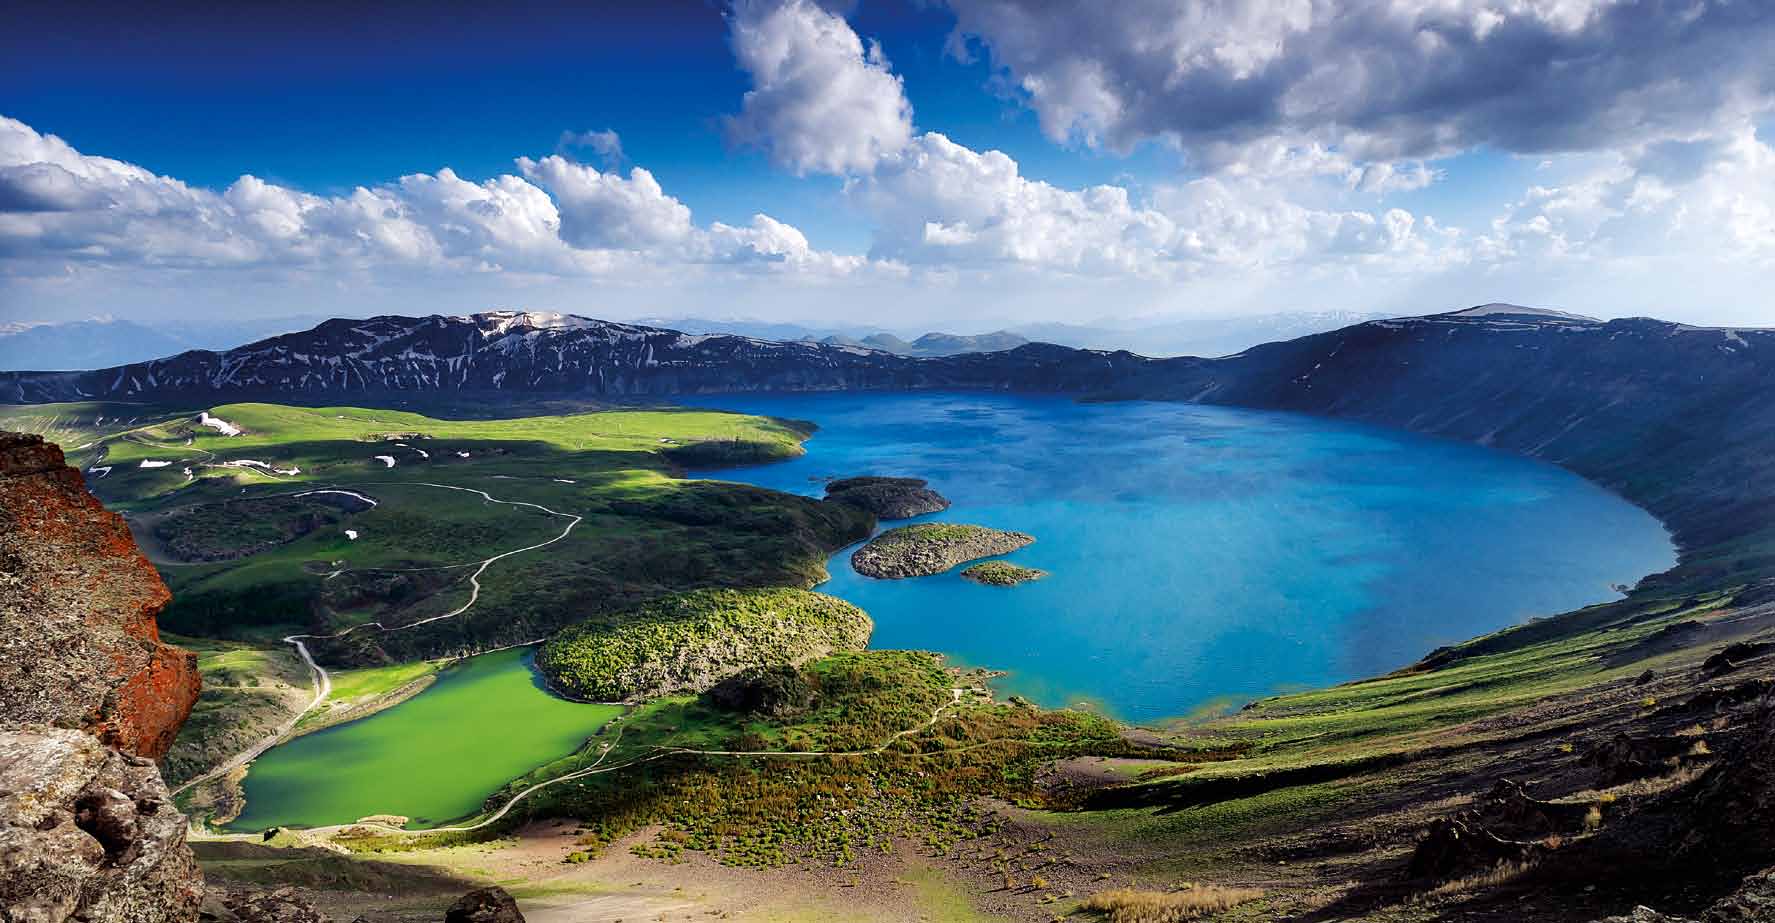 Patlamadan Sonra Nemrut Nemrut Dağı nın yüksekliği 2 bin 935 metre. Kalderasının kuzeyinde, jeotermal sıcak su kaynakları ile ısınan yeşil ve ılık küçük göl ile soğuk ve lacivert büyük göl yer alıyor.